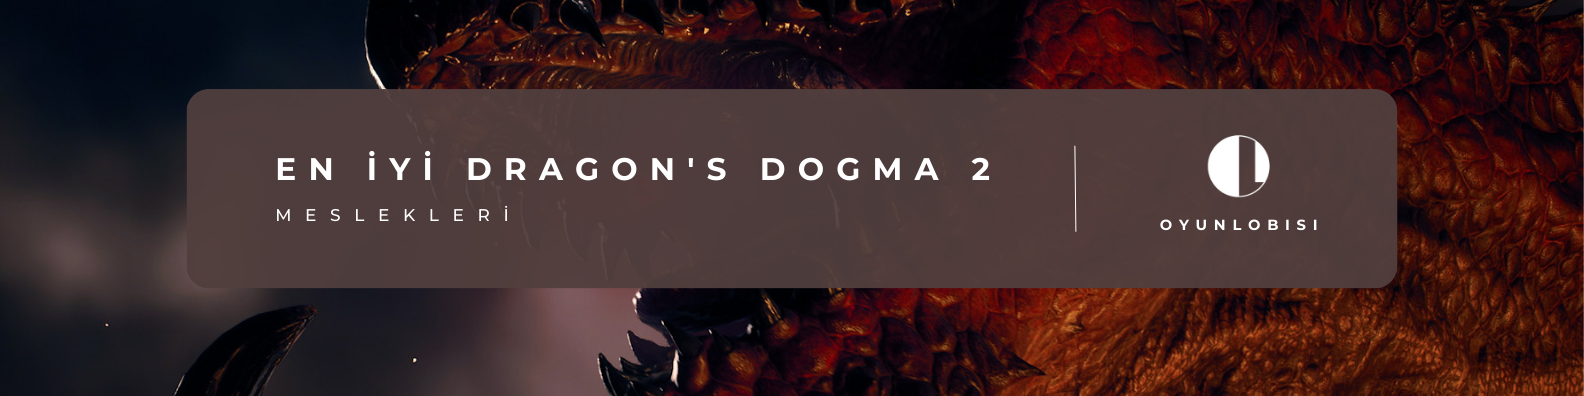 Dragon's Dogma 2.png